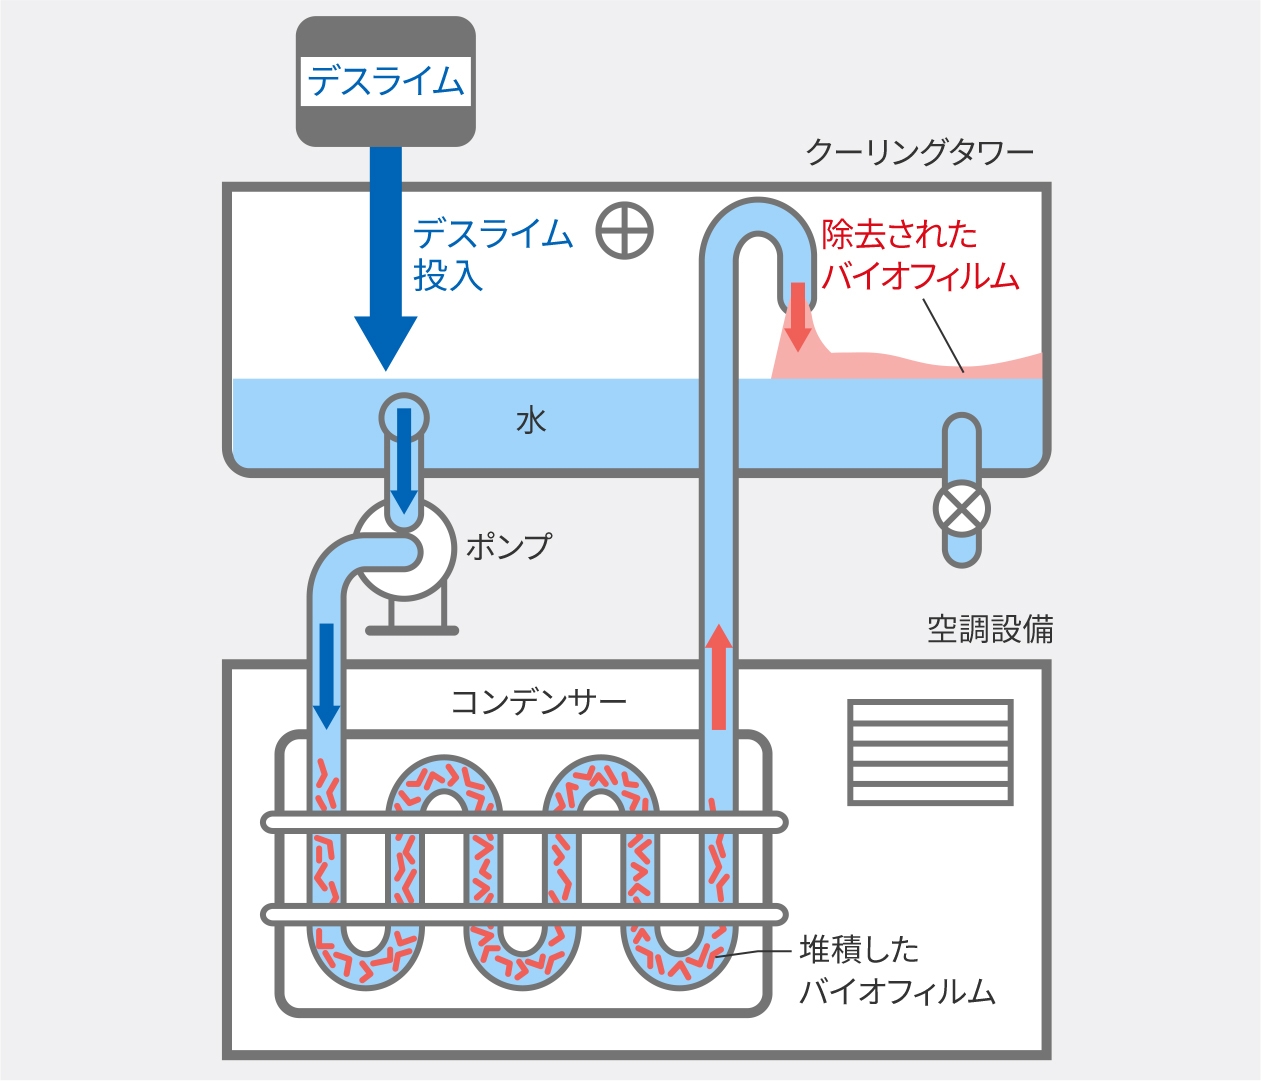 図：全体洗浄法の場合の説明図。デスライムを投入して全体洗浄する流れを説明。